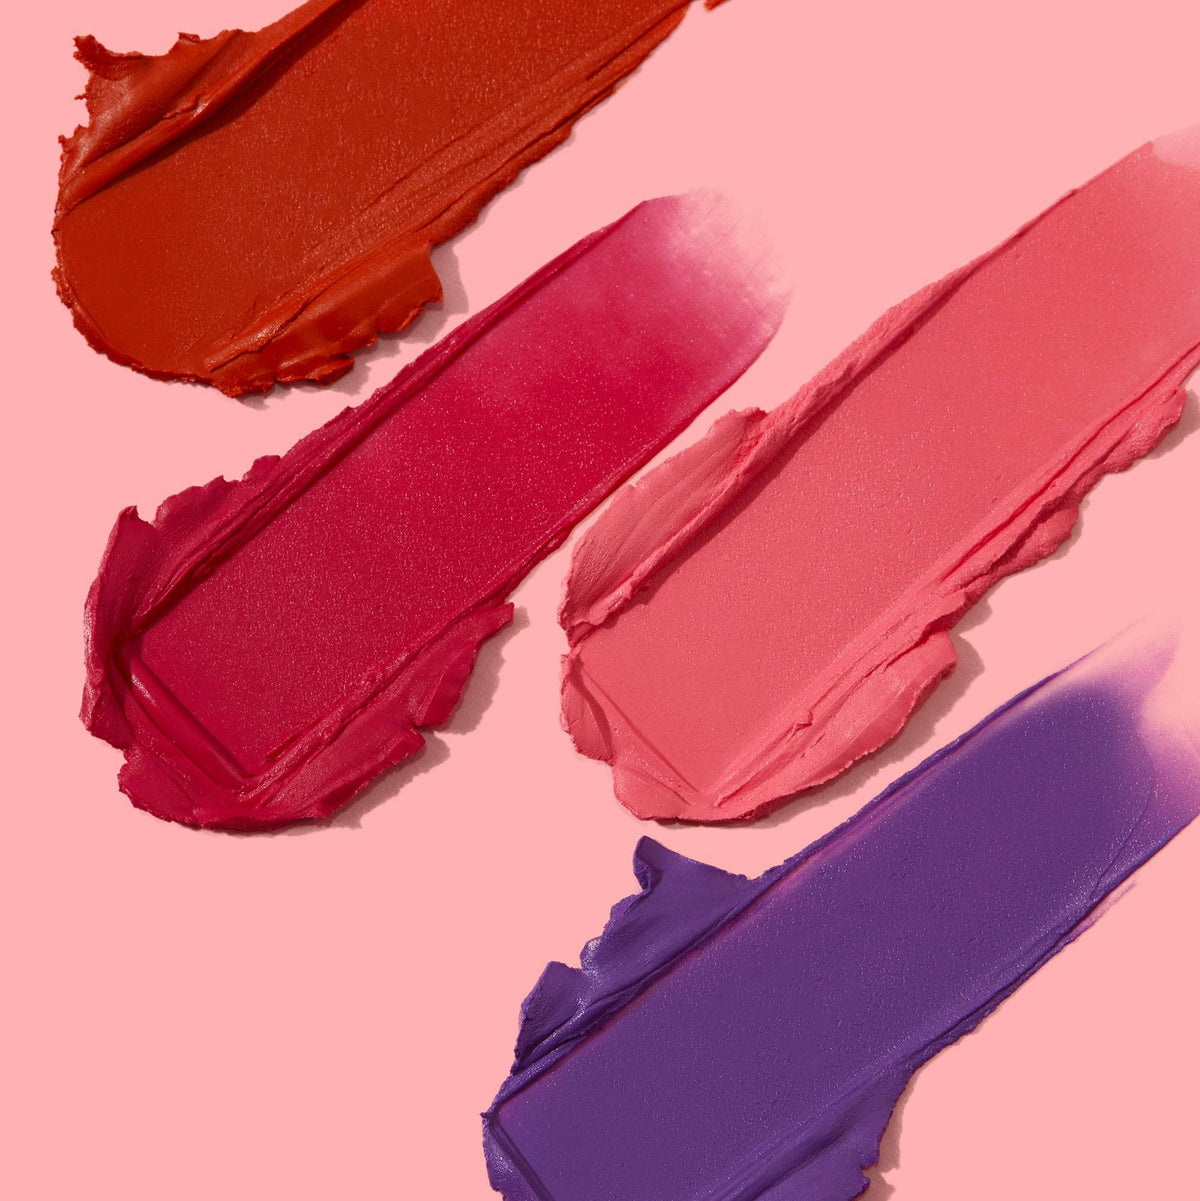 Cream Blush &amp; Brush Bundle - Coloured Raine Cosmetics